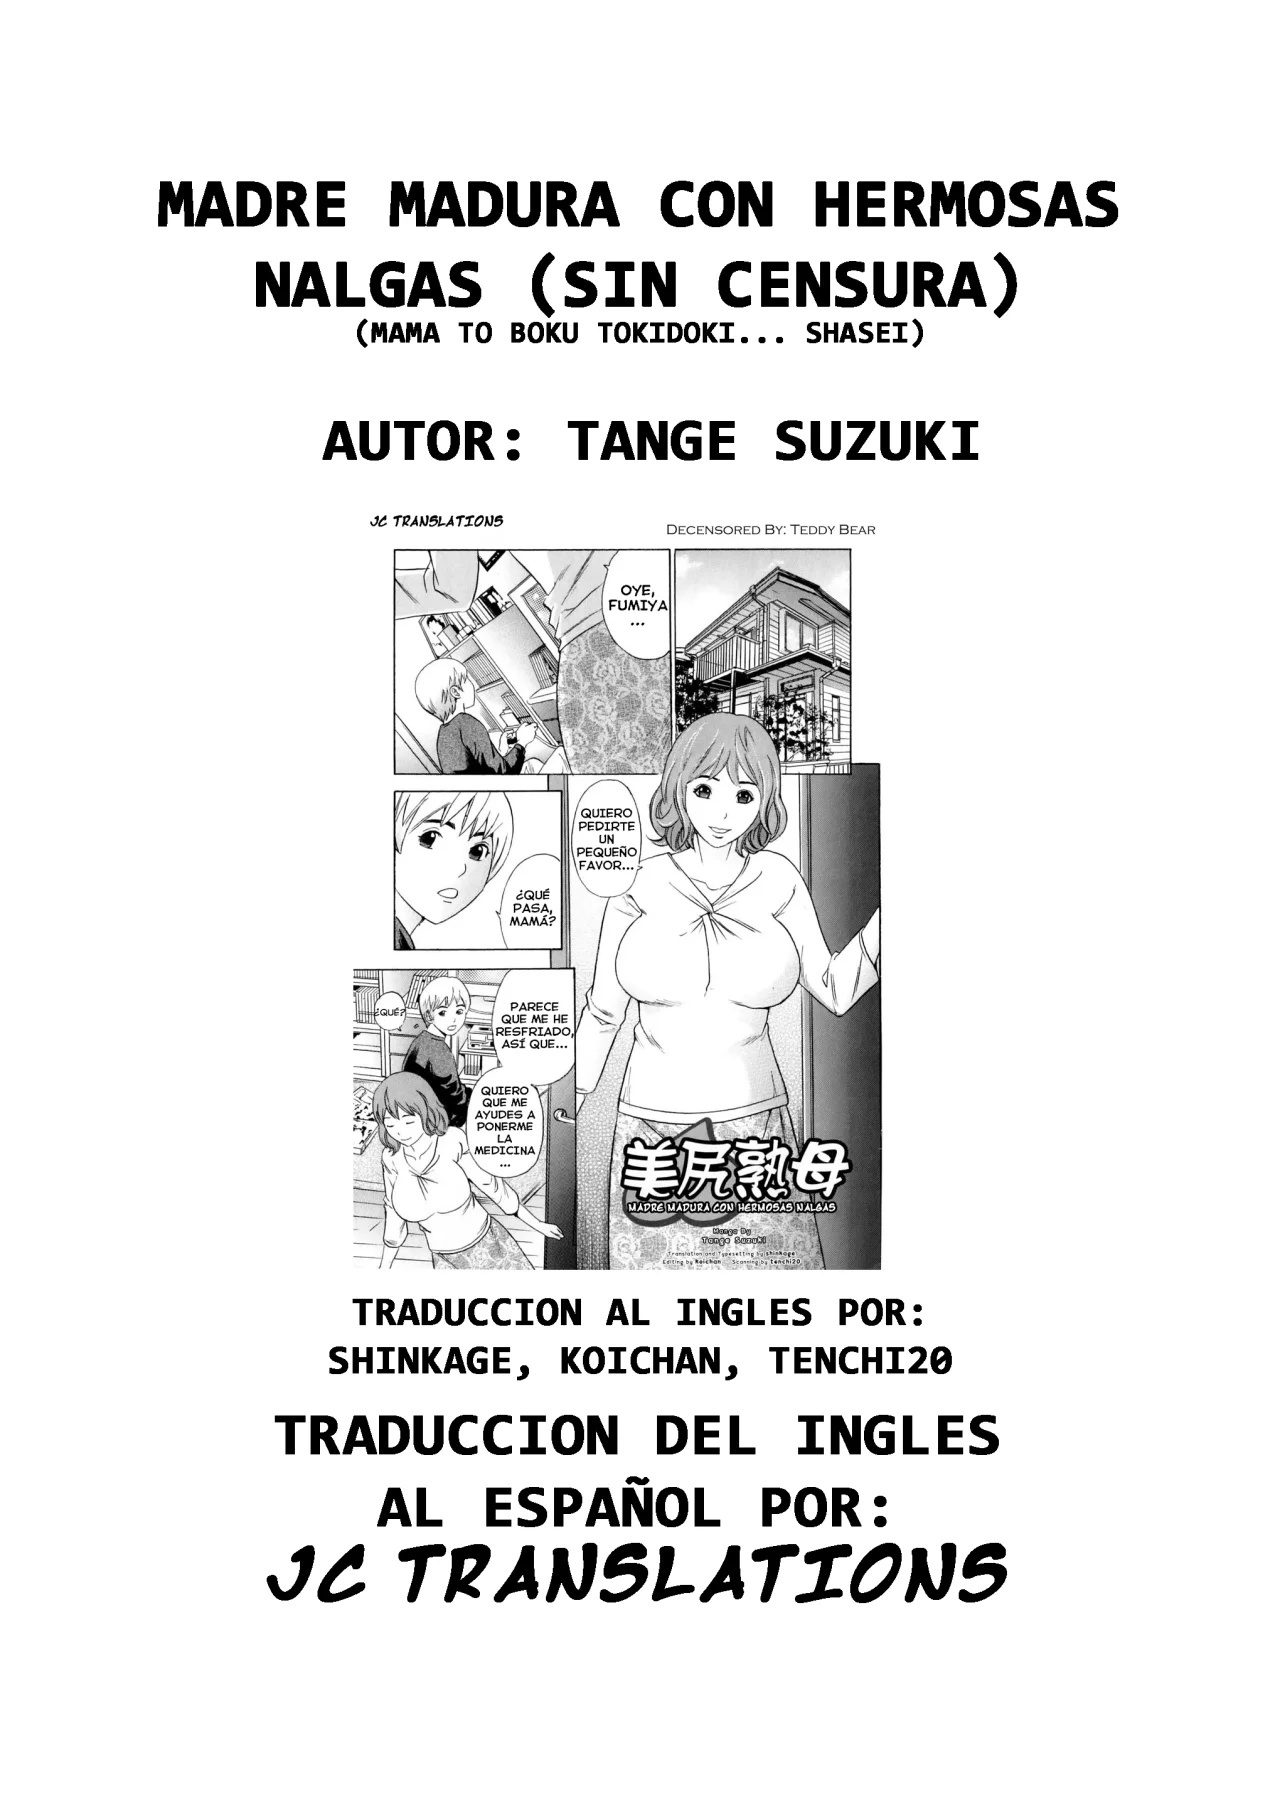 MADRE MADURA CON HERMOSAS NALGAS - 16